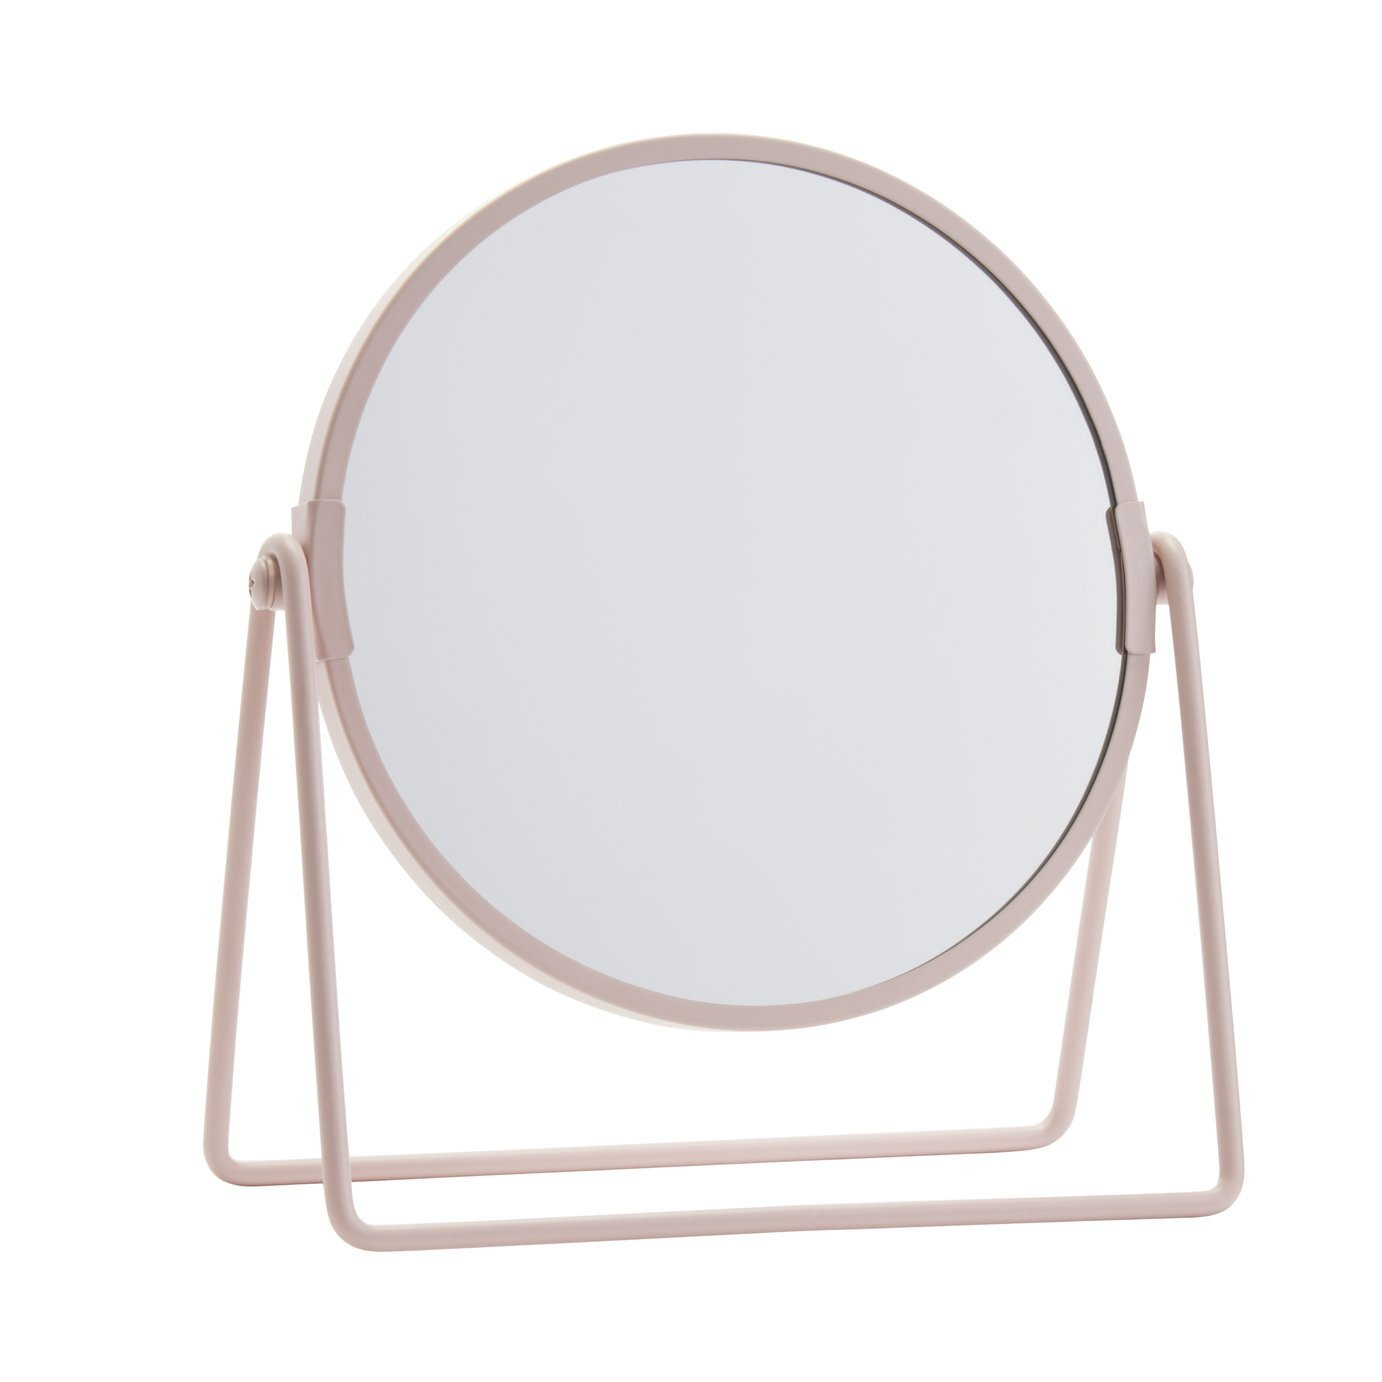 Argos Home Metal Swivel Mirror - Pink - image 1